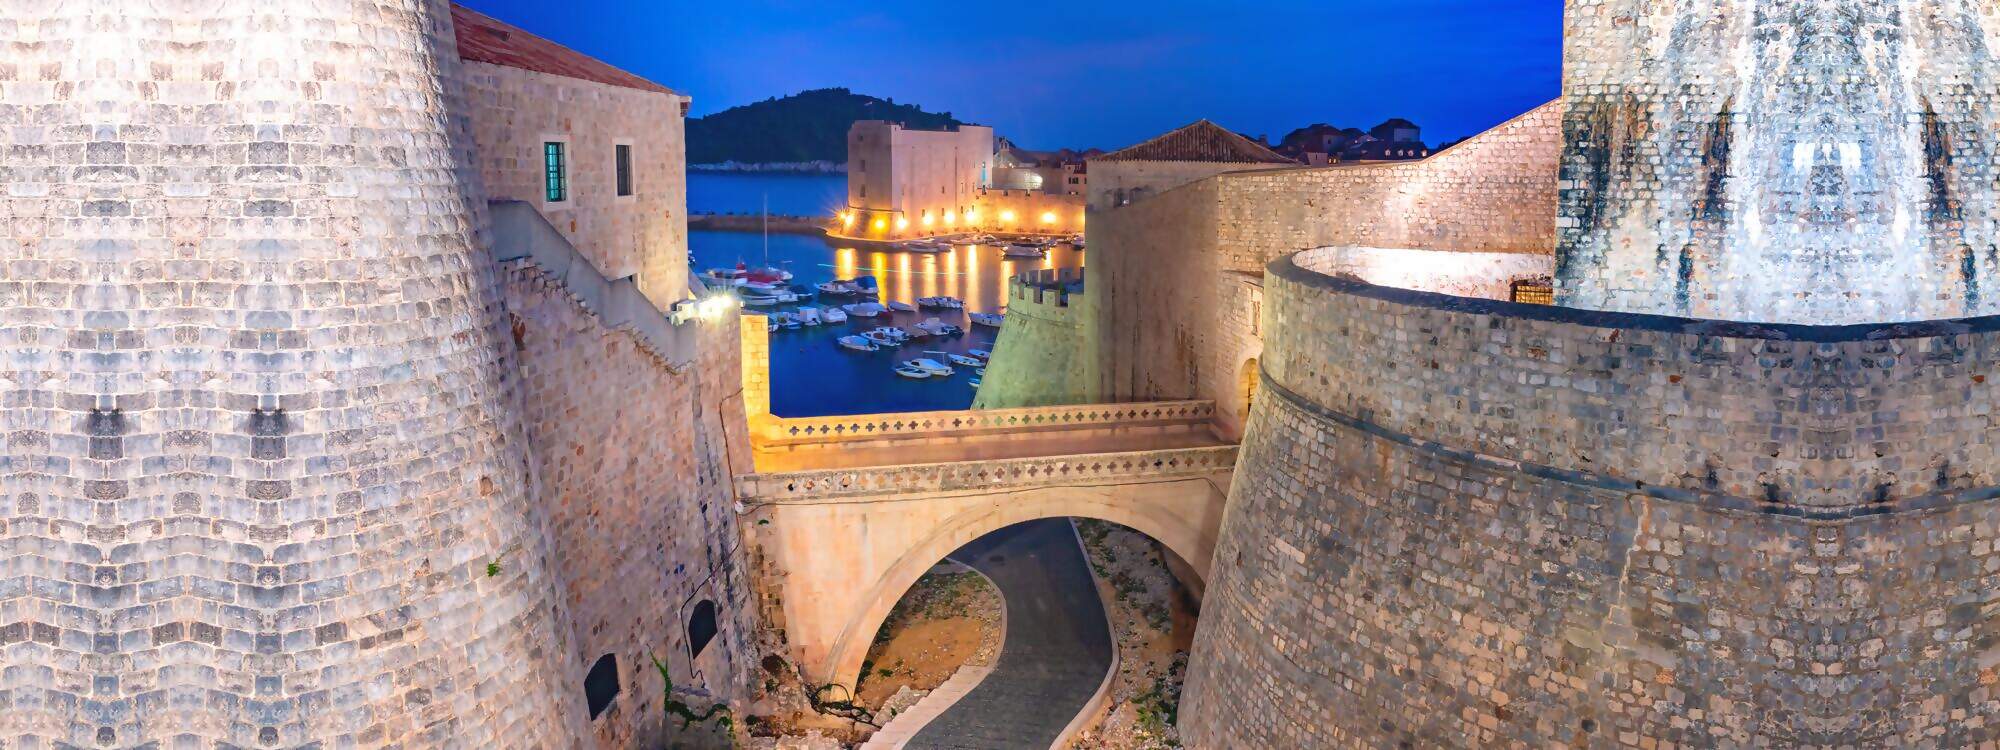 Alte Stadtmauern und Alter Hafen von Dubrovnik in Kroatien